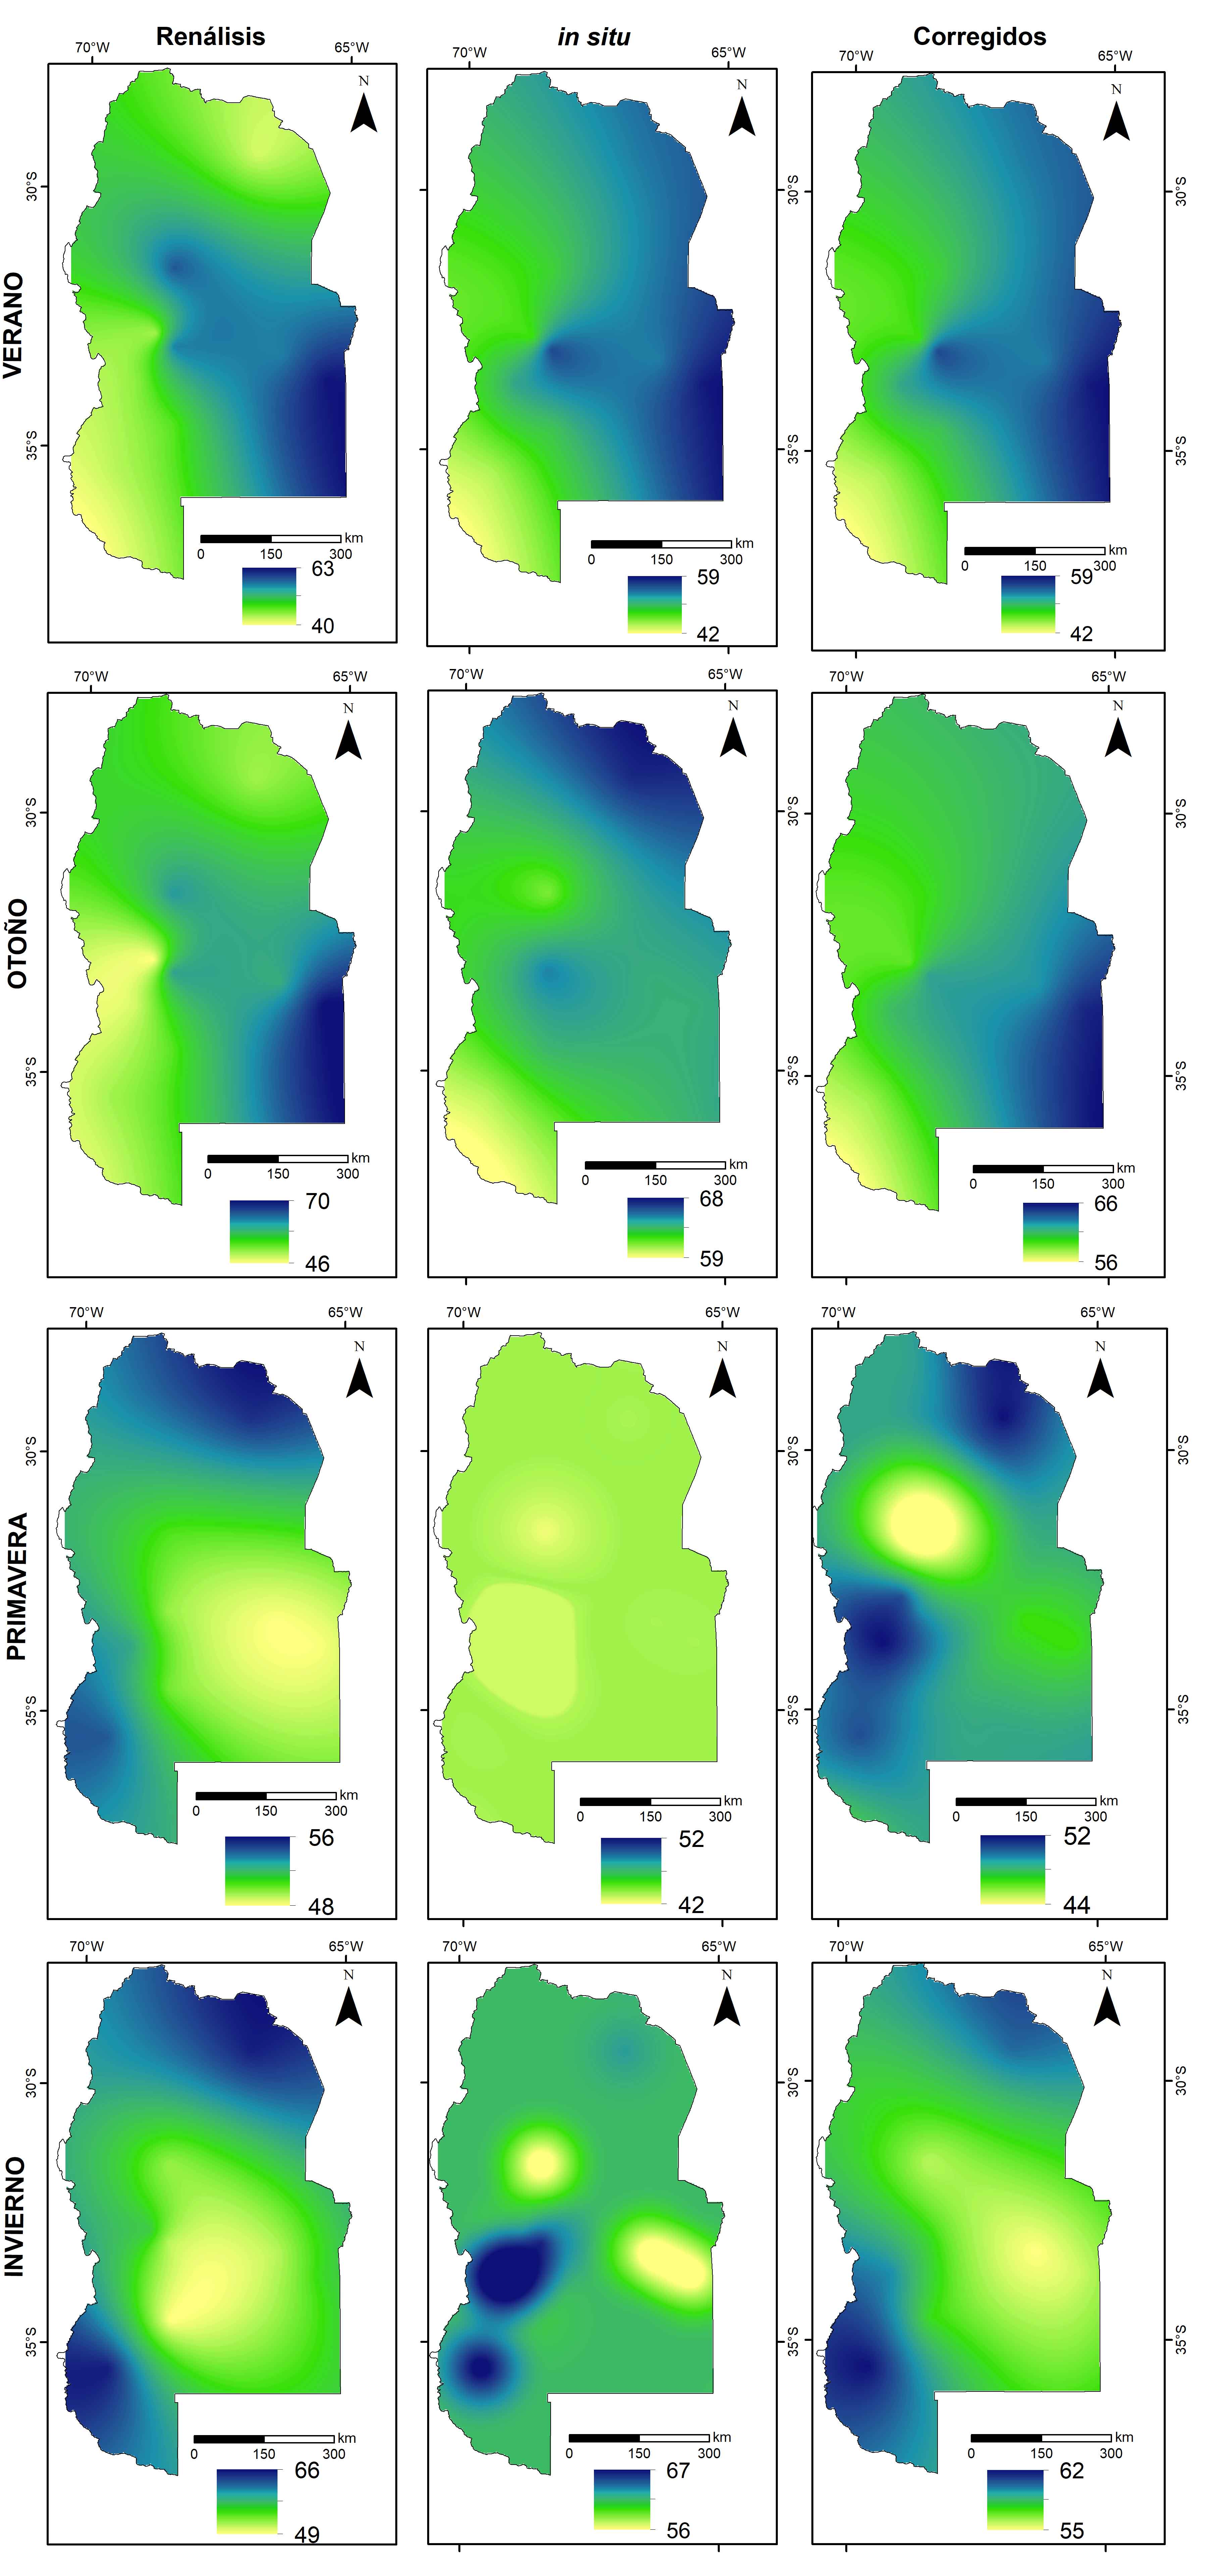 Distribución espacial de la humedad relativa estacional,
considerando: i. Datos del Reanálisis, ii. Datos
medidos In situ y iii. Datos corregidos.
Período de testeo (2001-2020).